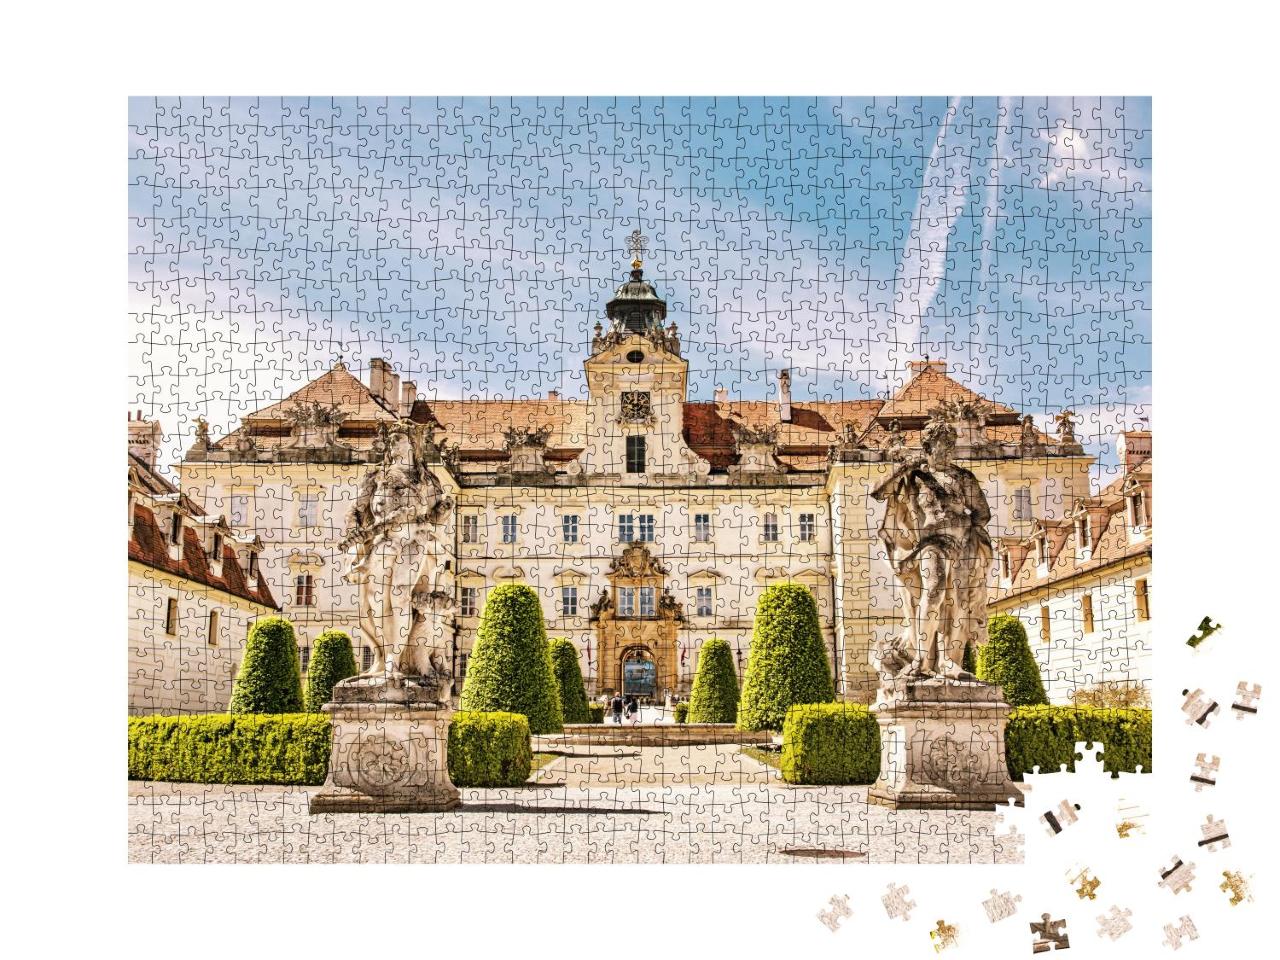 Puzzle 1000 Teile „Barockresidenzen von Valtice, Mitteleuropa“